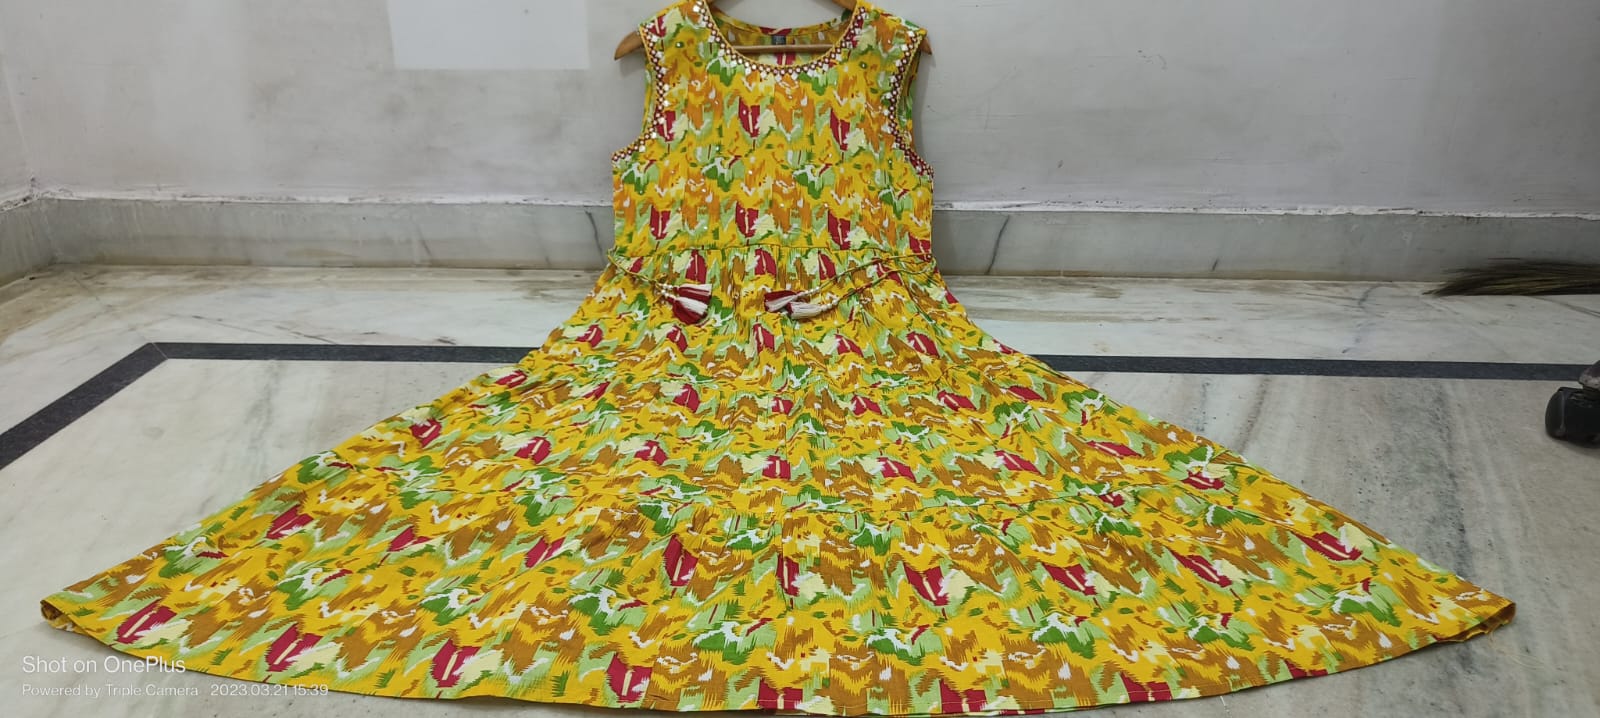 ഏത് പ്രായത്തിൽ ഉള്ള വർക്കും ഇടാൻ പറ്റുന്ന frock#summer dress#Frock Malayalam#Easy  method - YouTube